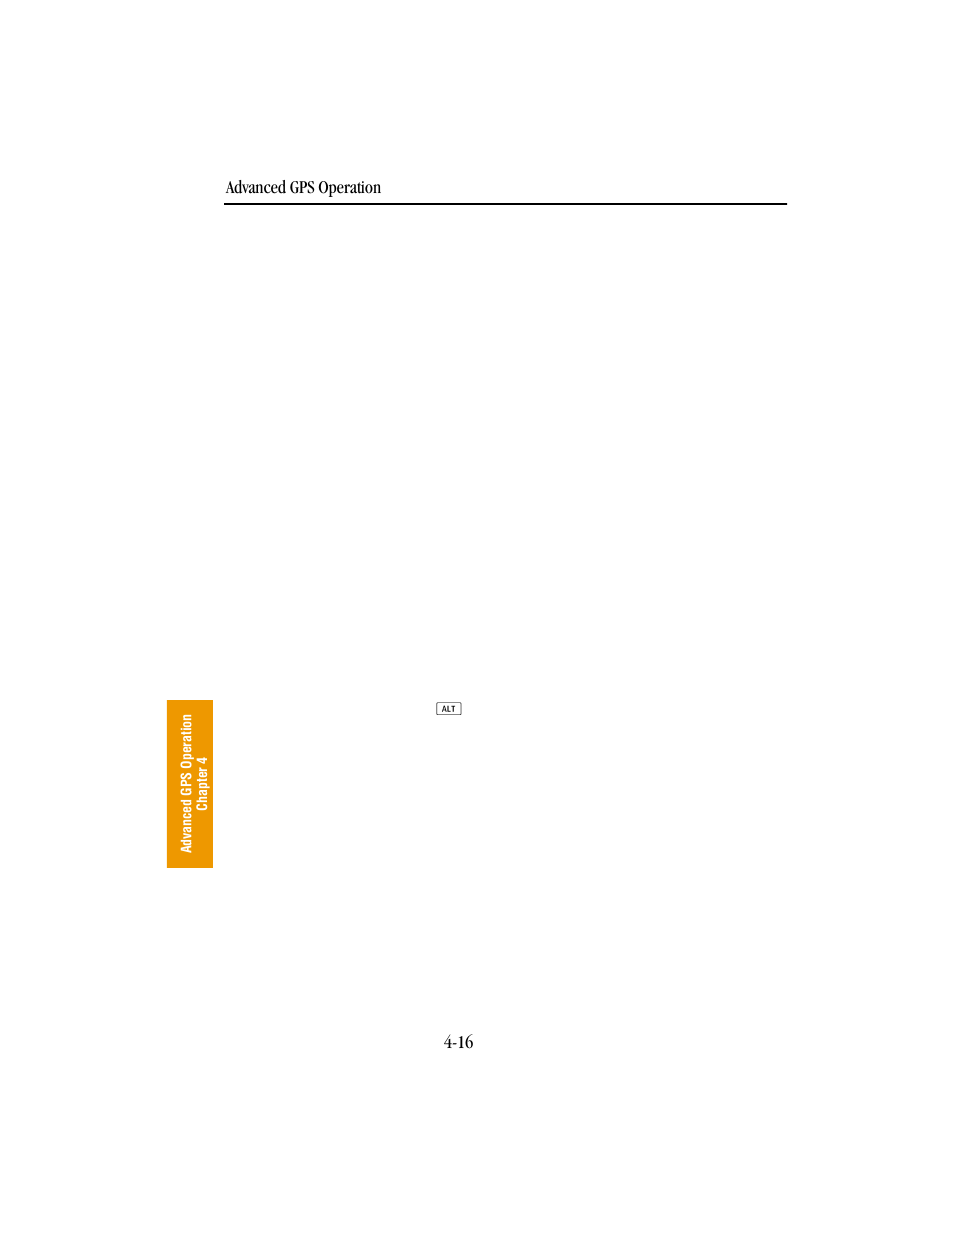 BendixKing KLN 89B - Pilots Guide User Manual | Page 127 / 246